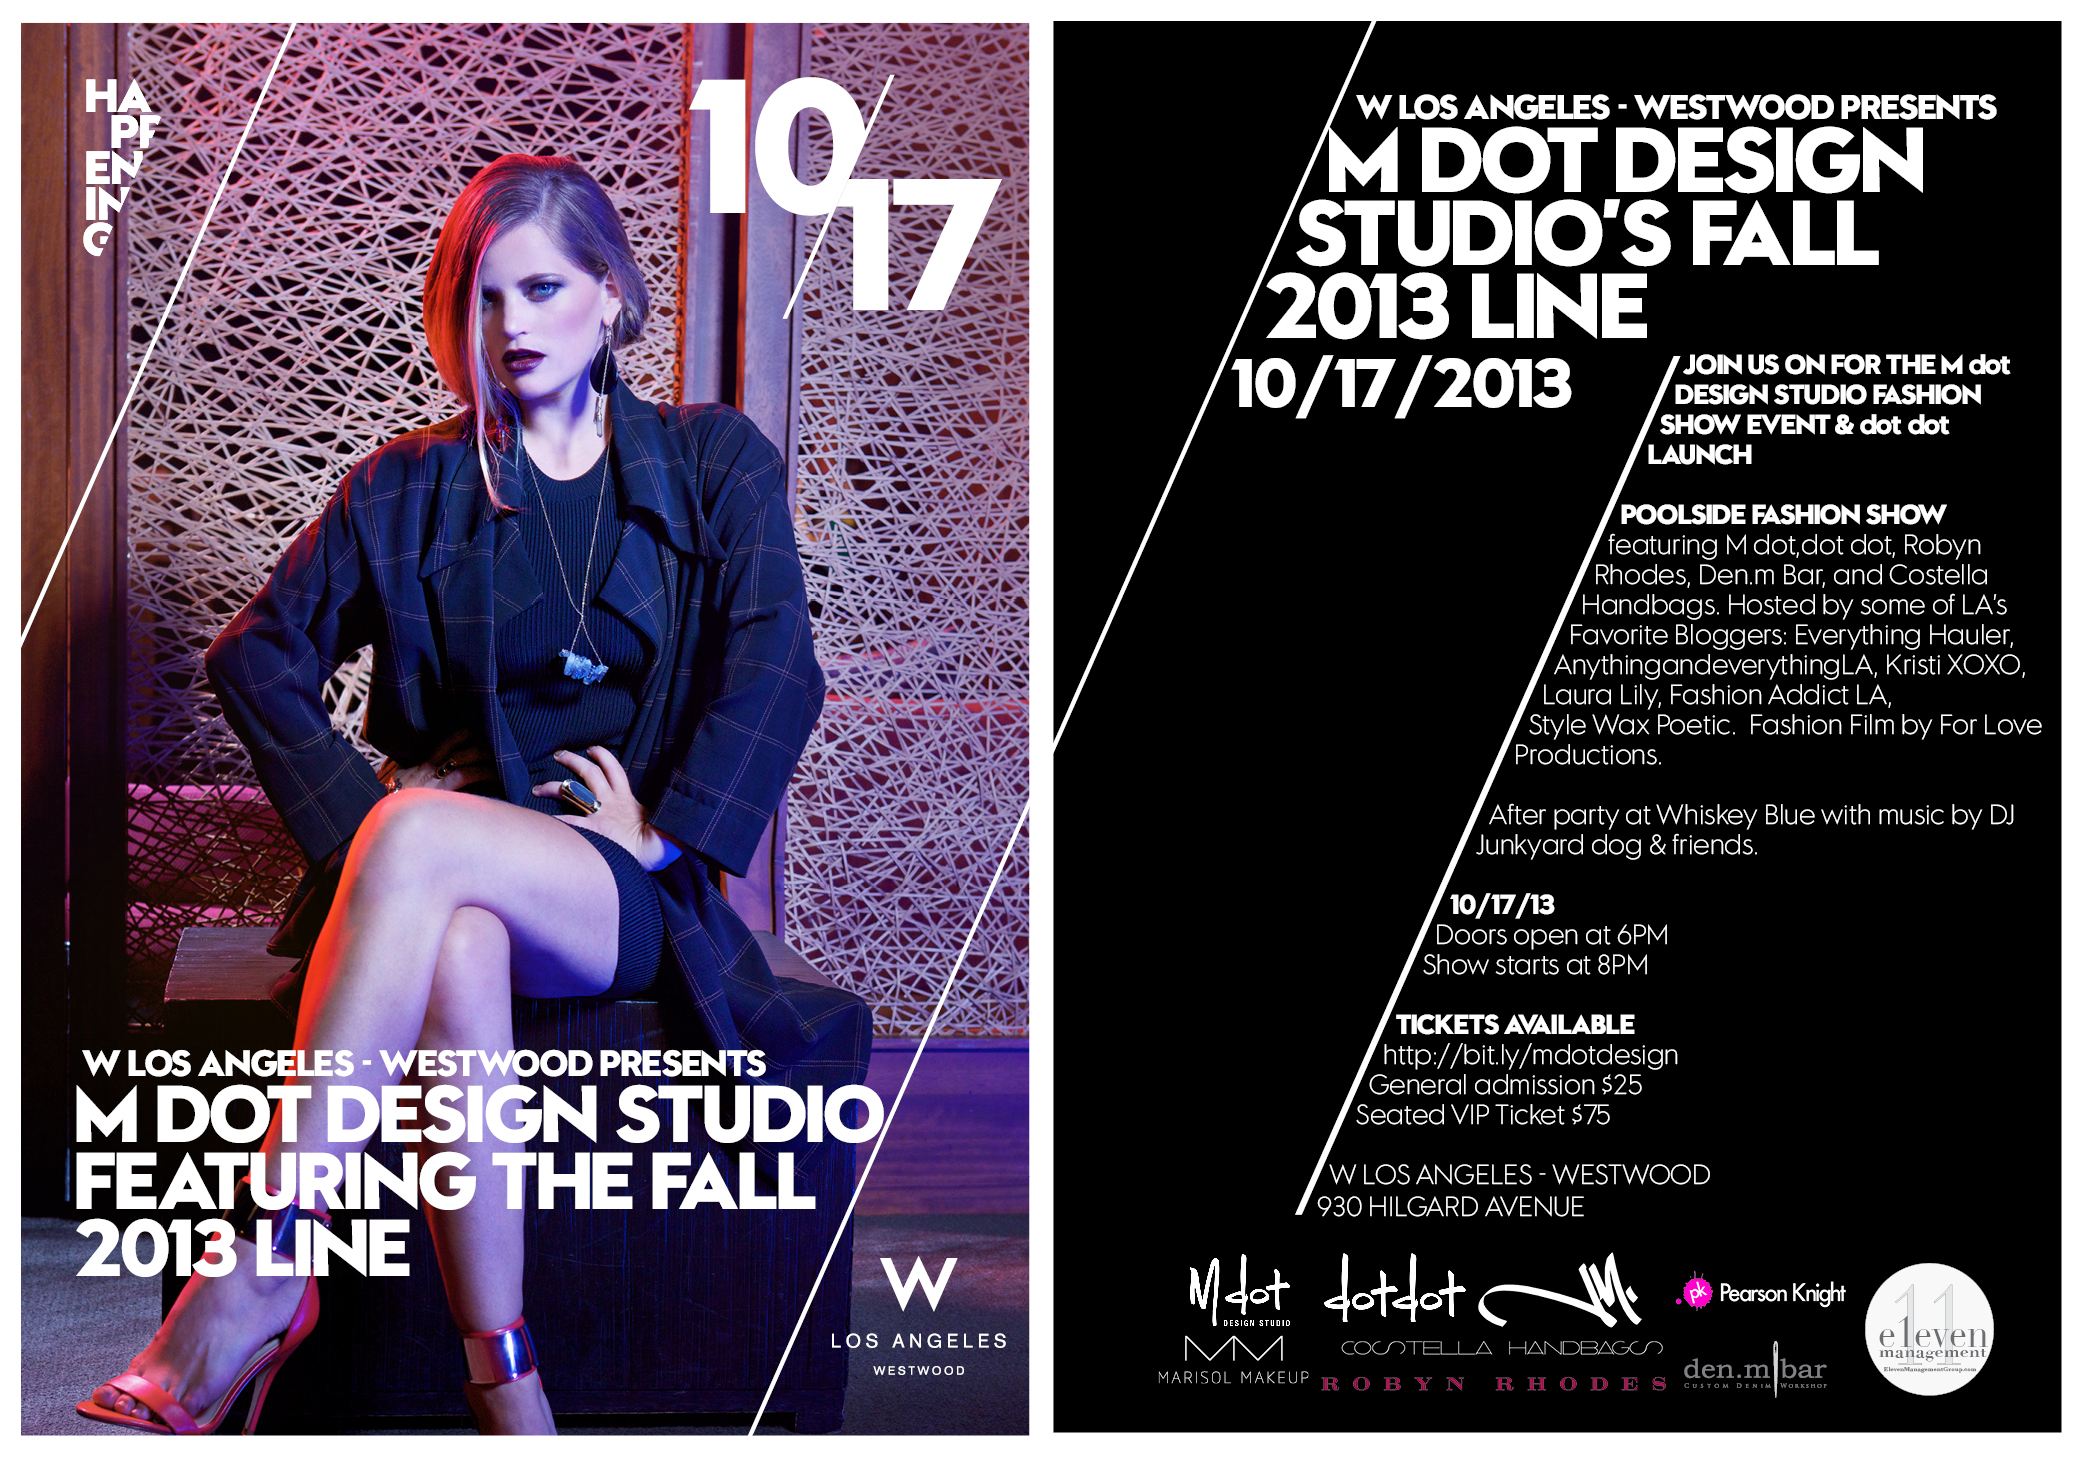 LAFW, Los Angeles Fashion Week, M Dot Design Studio, W Hotel Westwood